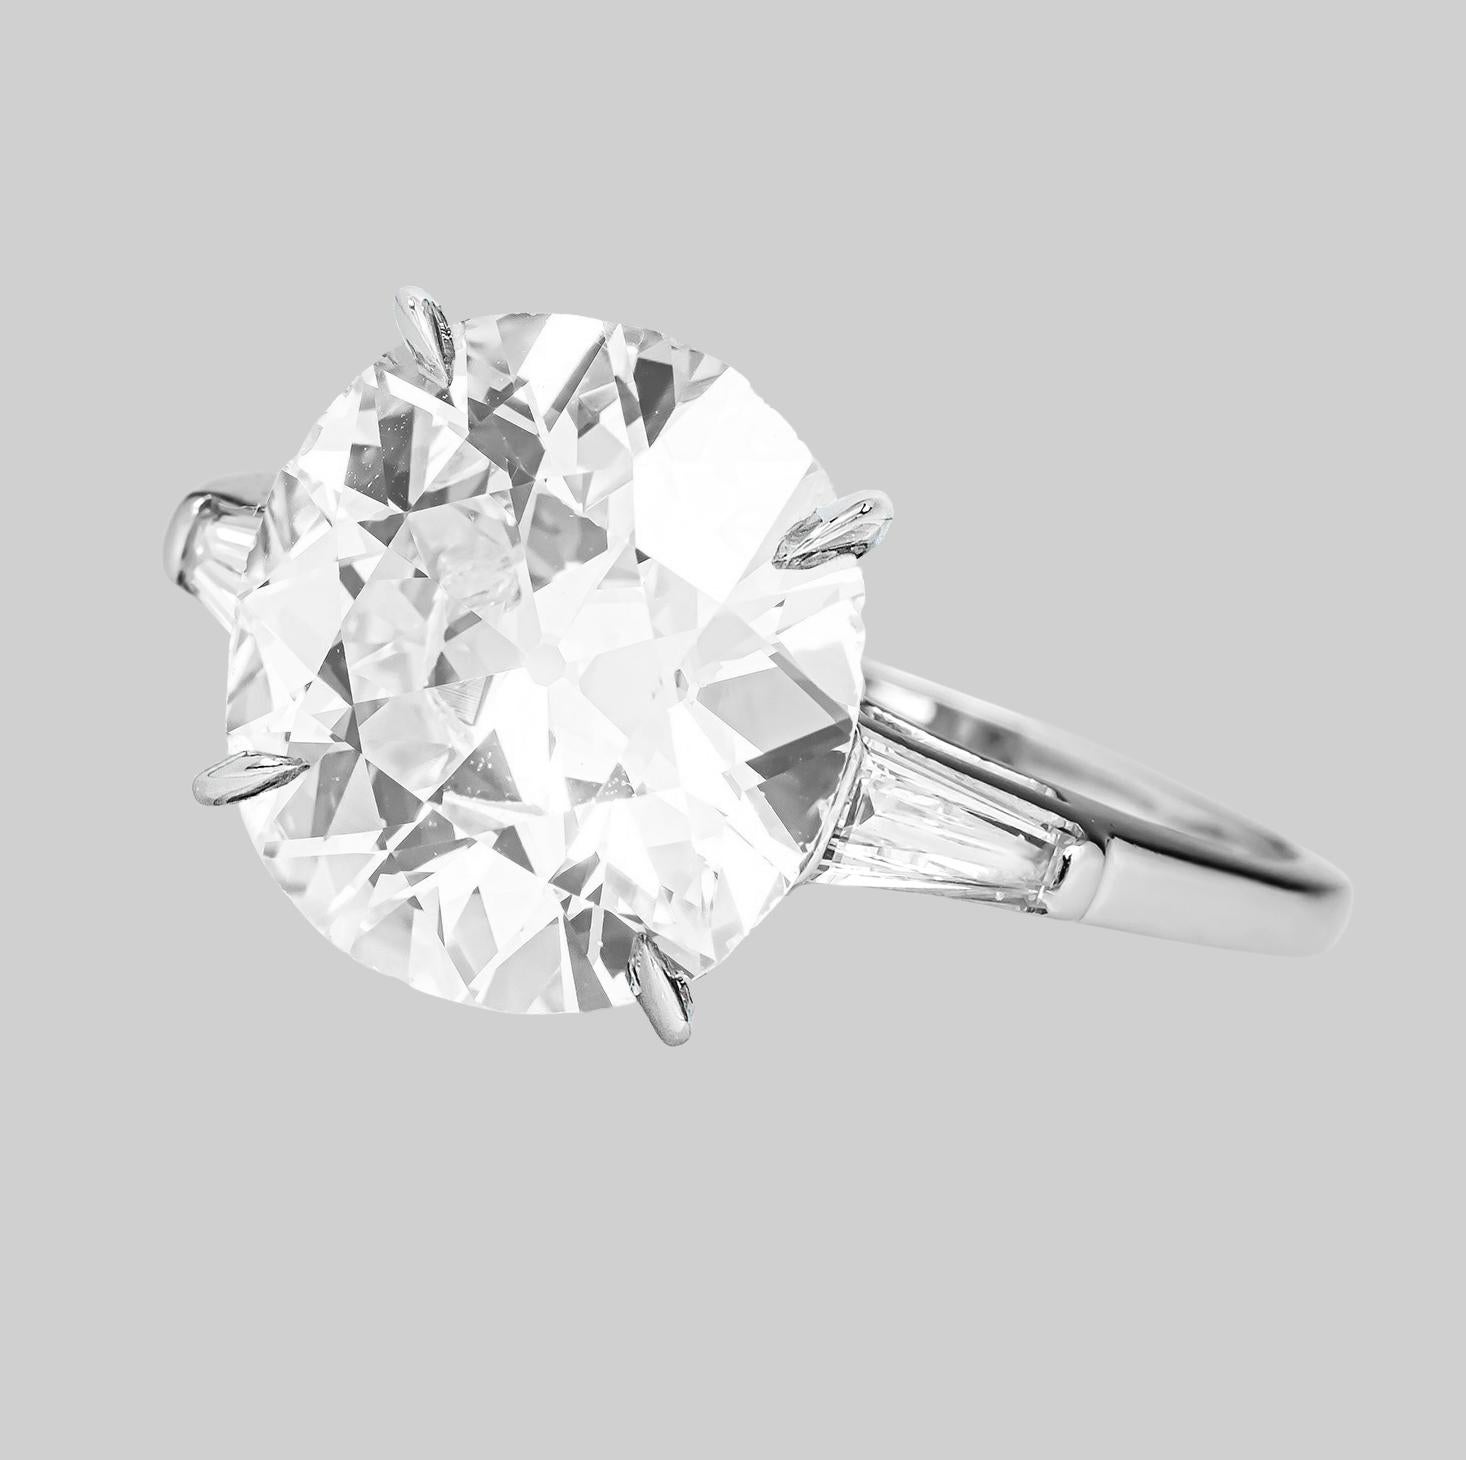 Une bague de fiançailles unique en son genre comprenant un diamant de taille Vieille Europe pesant 3 carats. Le diamant est certifié par le GIA, qui indique qu'il est de couleur H et de pureté VS1, par Antinori di Sanpietro ROMA
Le métal est le